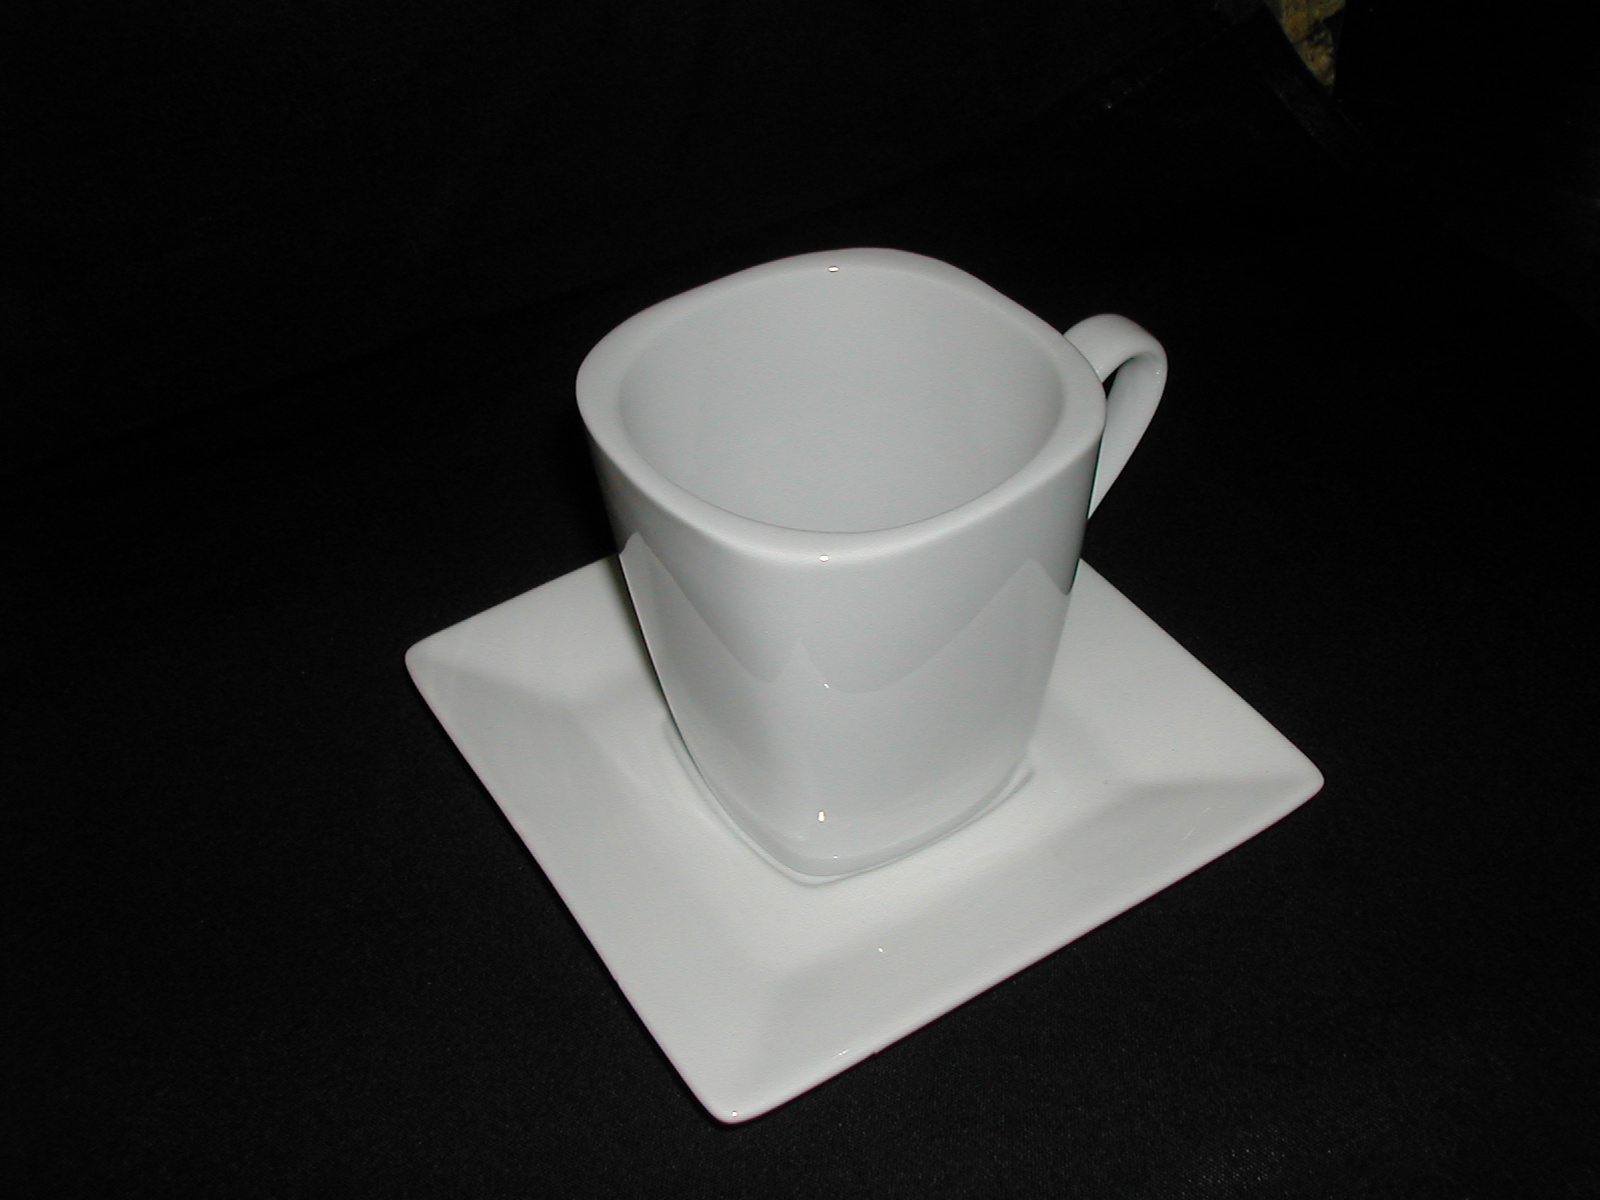 Cuadrado blanco en forma de taza